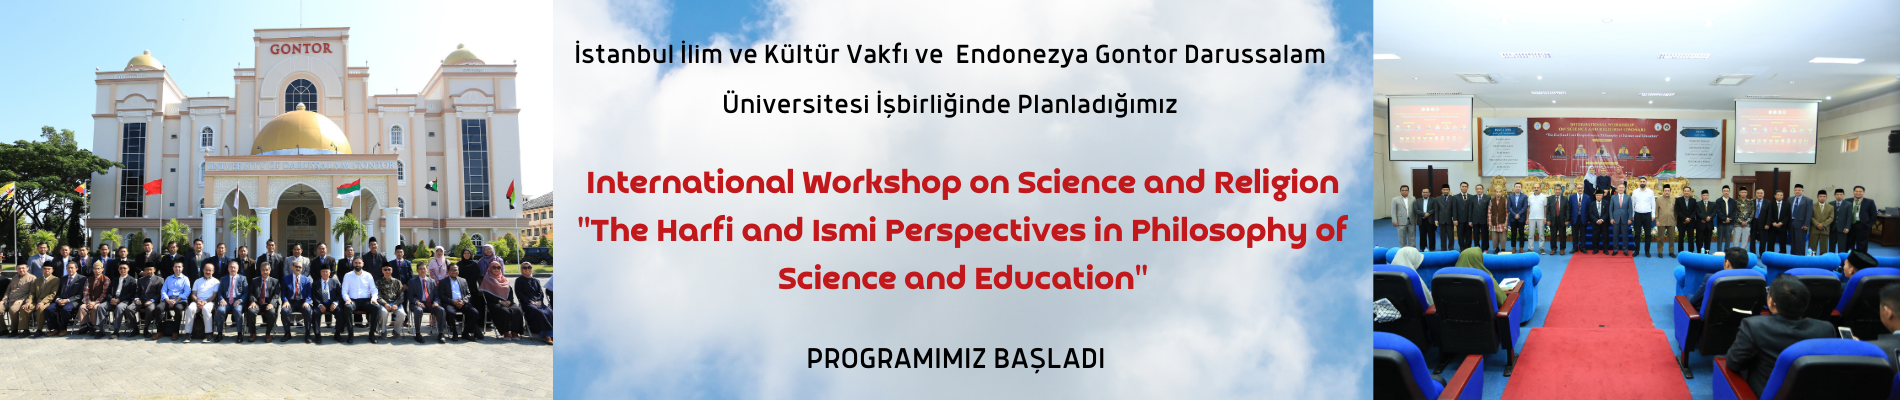 Darussalam Gontor Üniversitesi ve IIK işbirliğinde planladığımız “International Workshop on Science and Religion ” programımız başladı